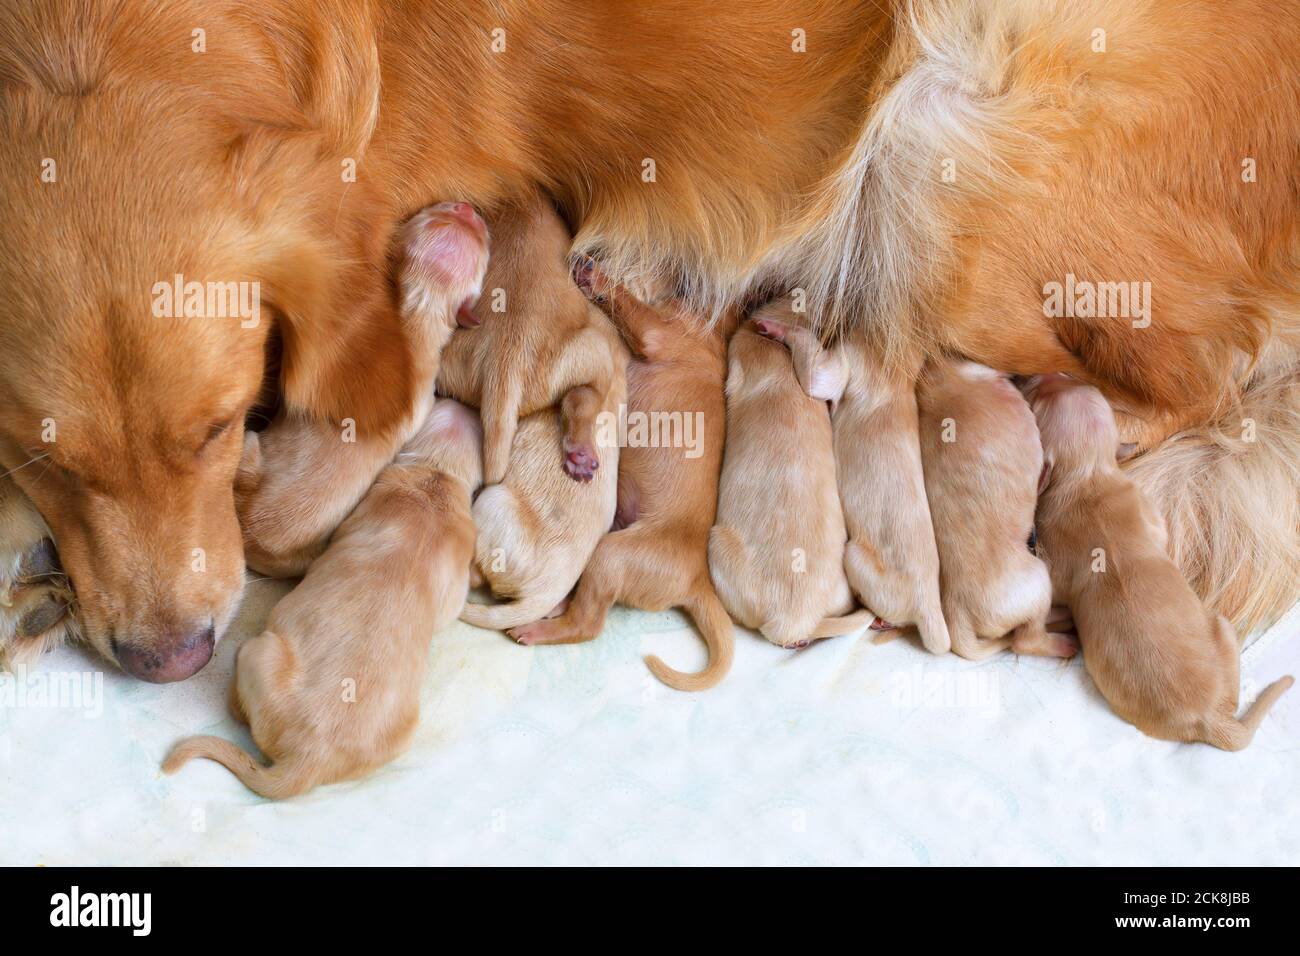 reguleren Ithaca nieuwigheid New born golden retriever puppies hi-res stock photography and images -  Alamy